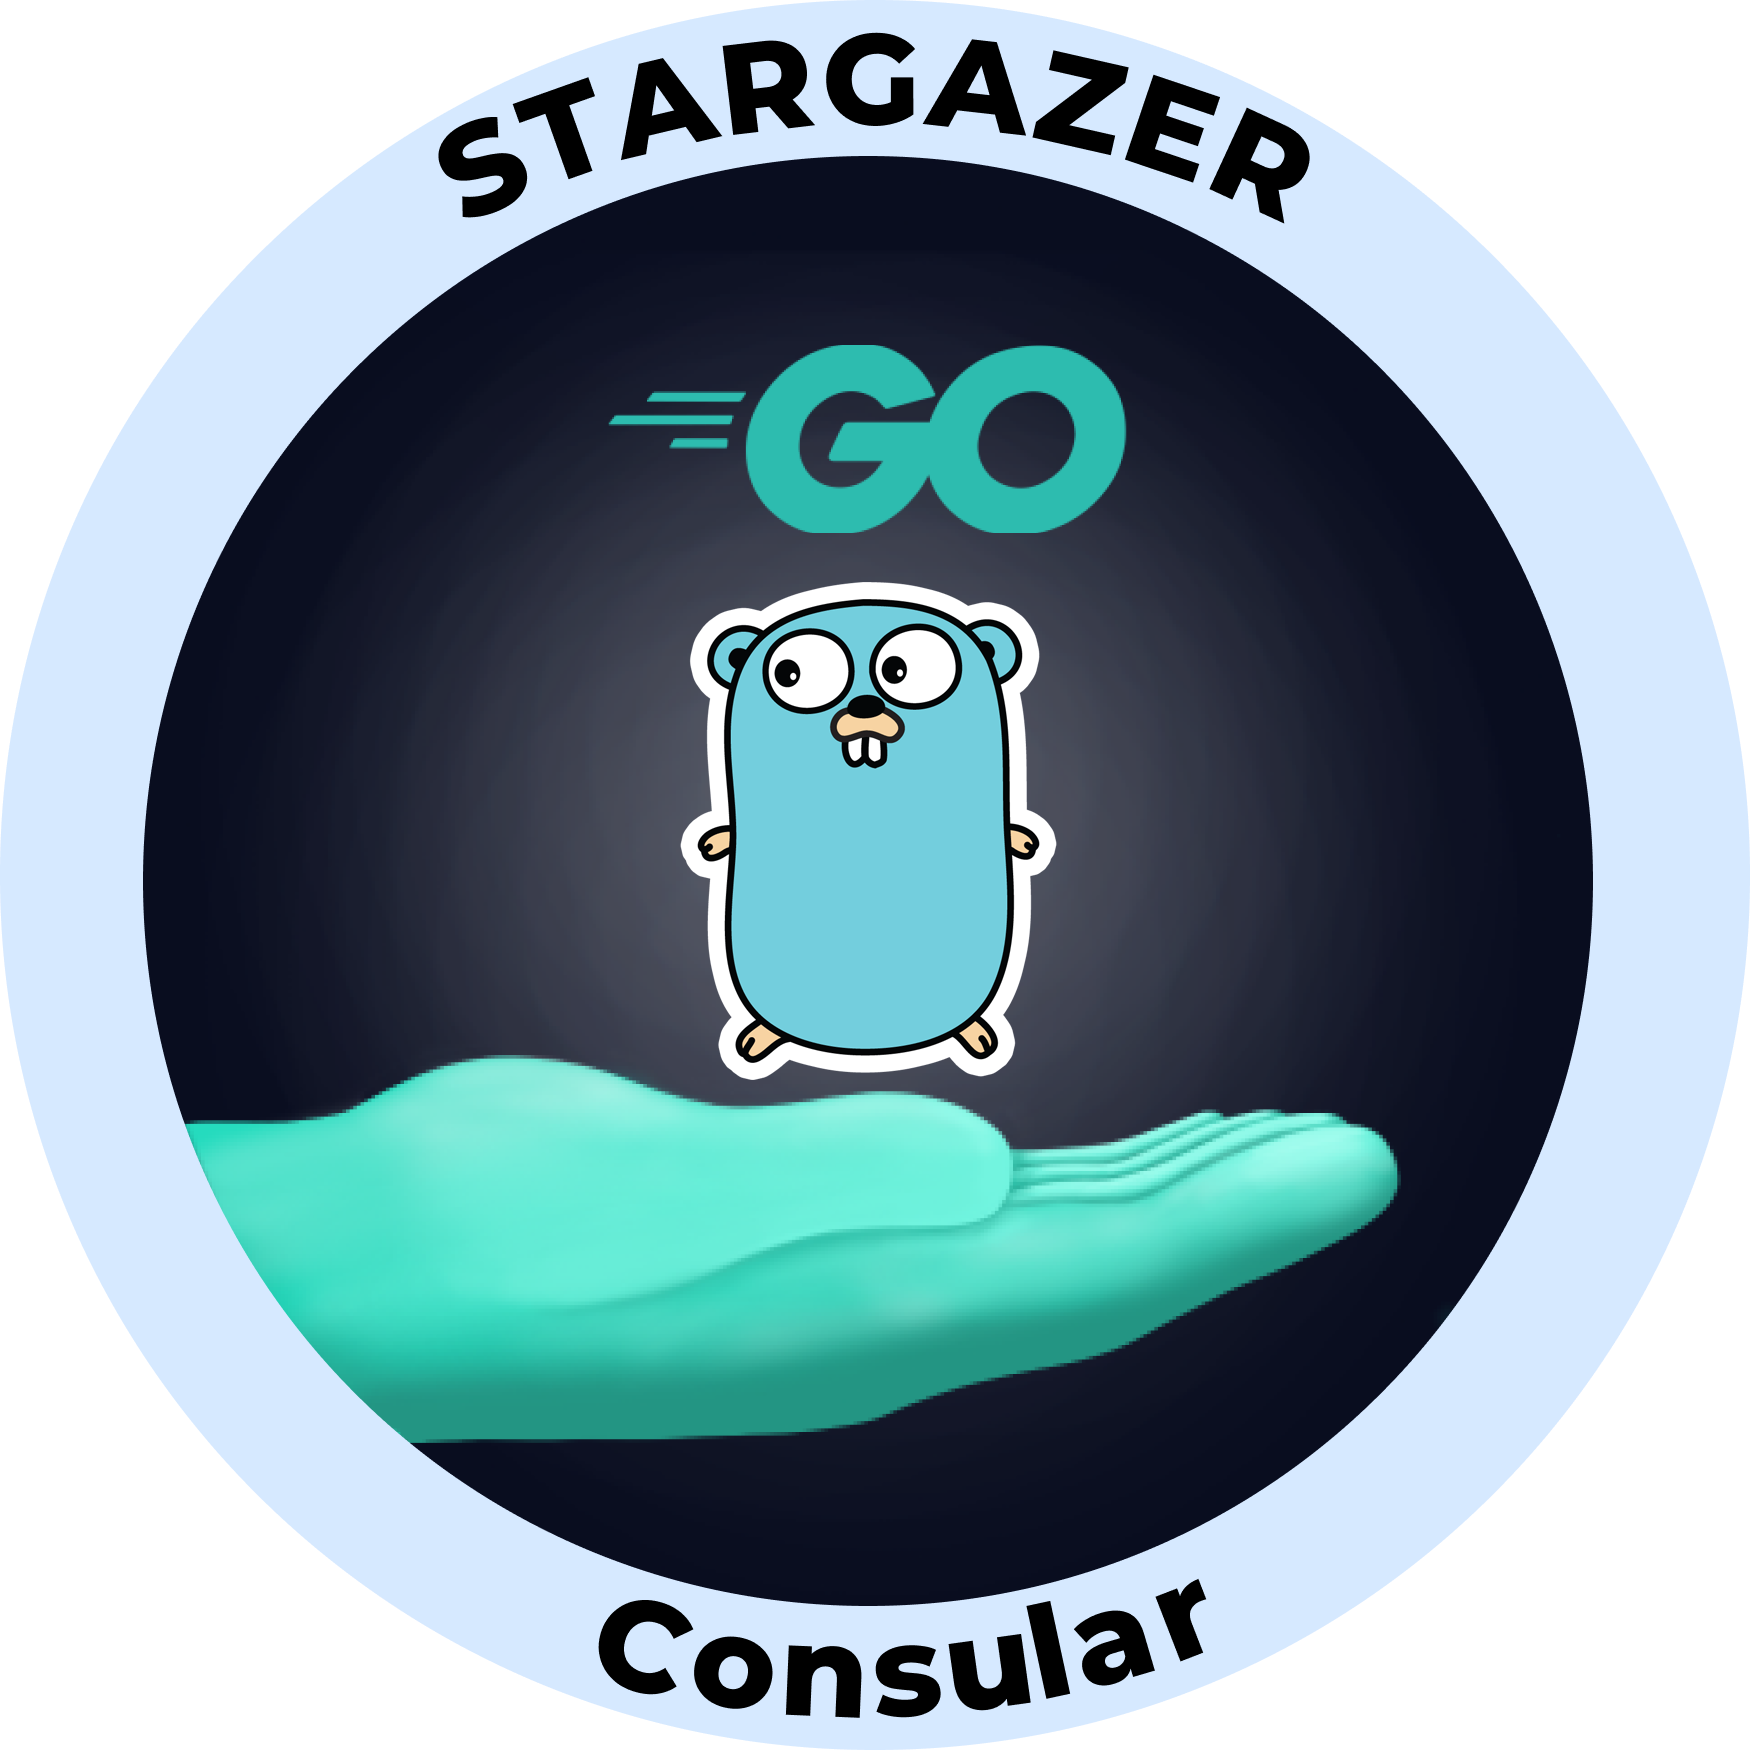 Web3 Badge | Stargazer: Go Consular logo